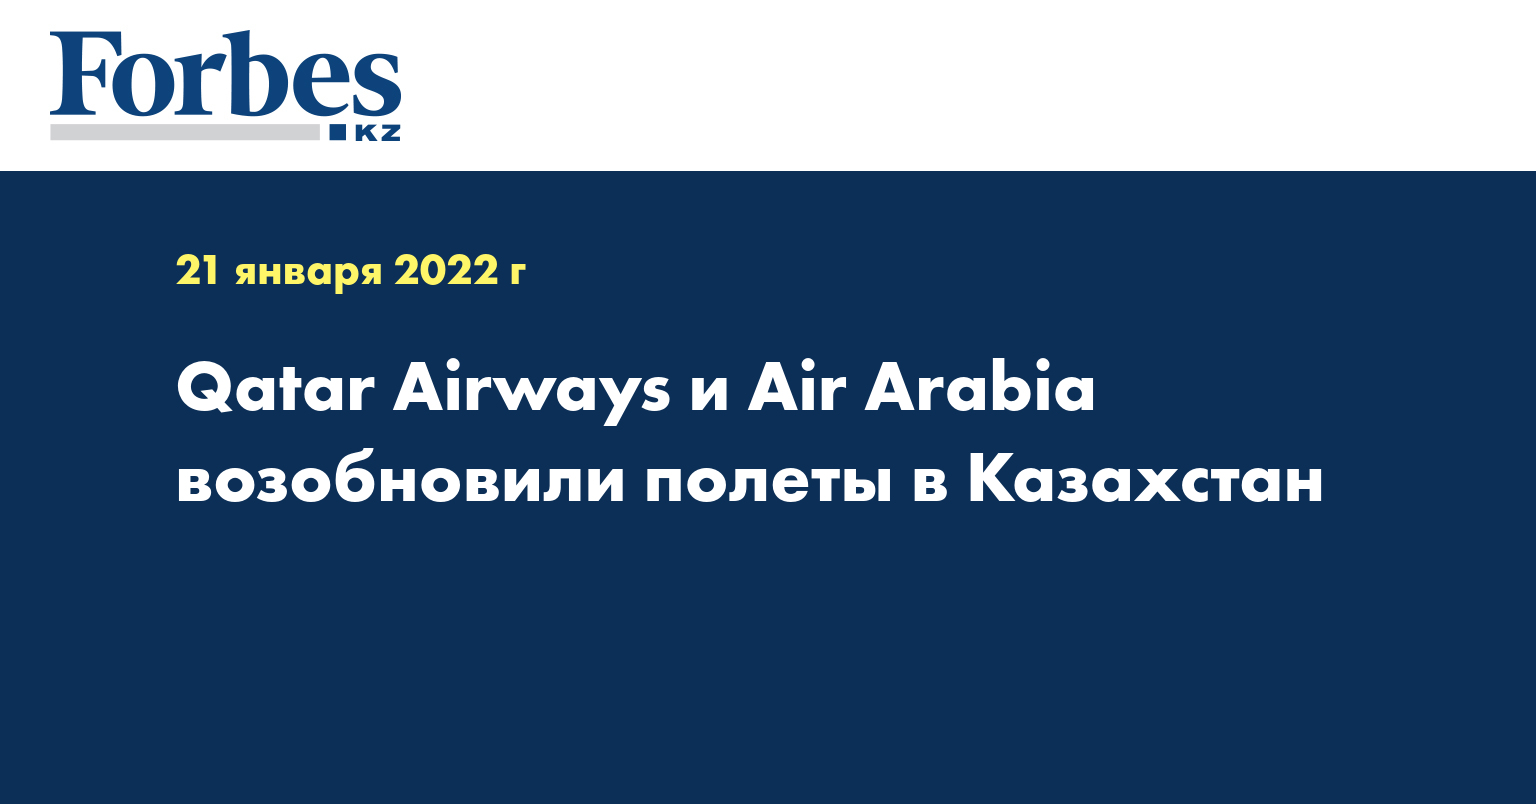 Qatar Airways и Air Arabia возобновили полеты в Казахстан